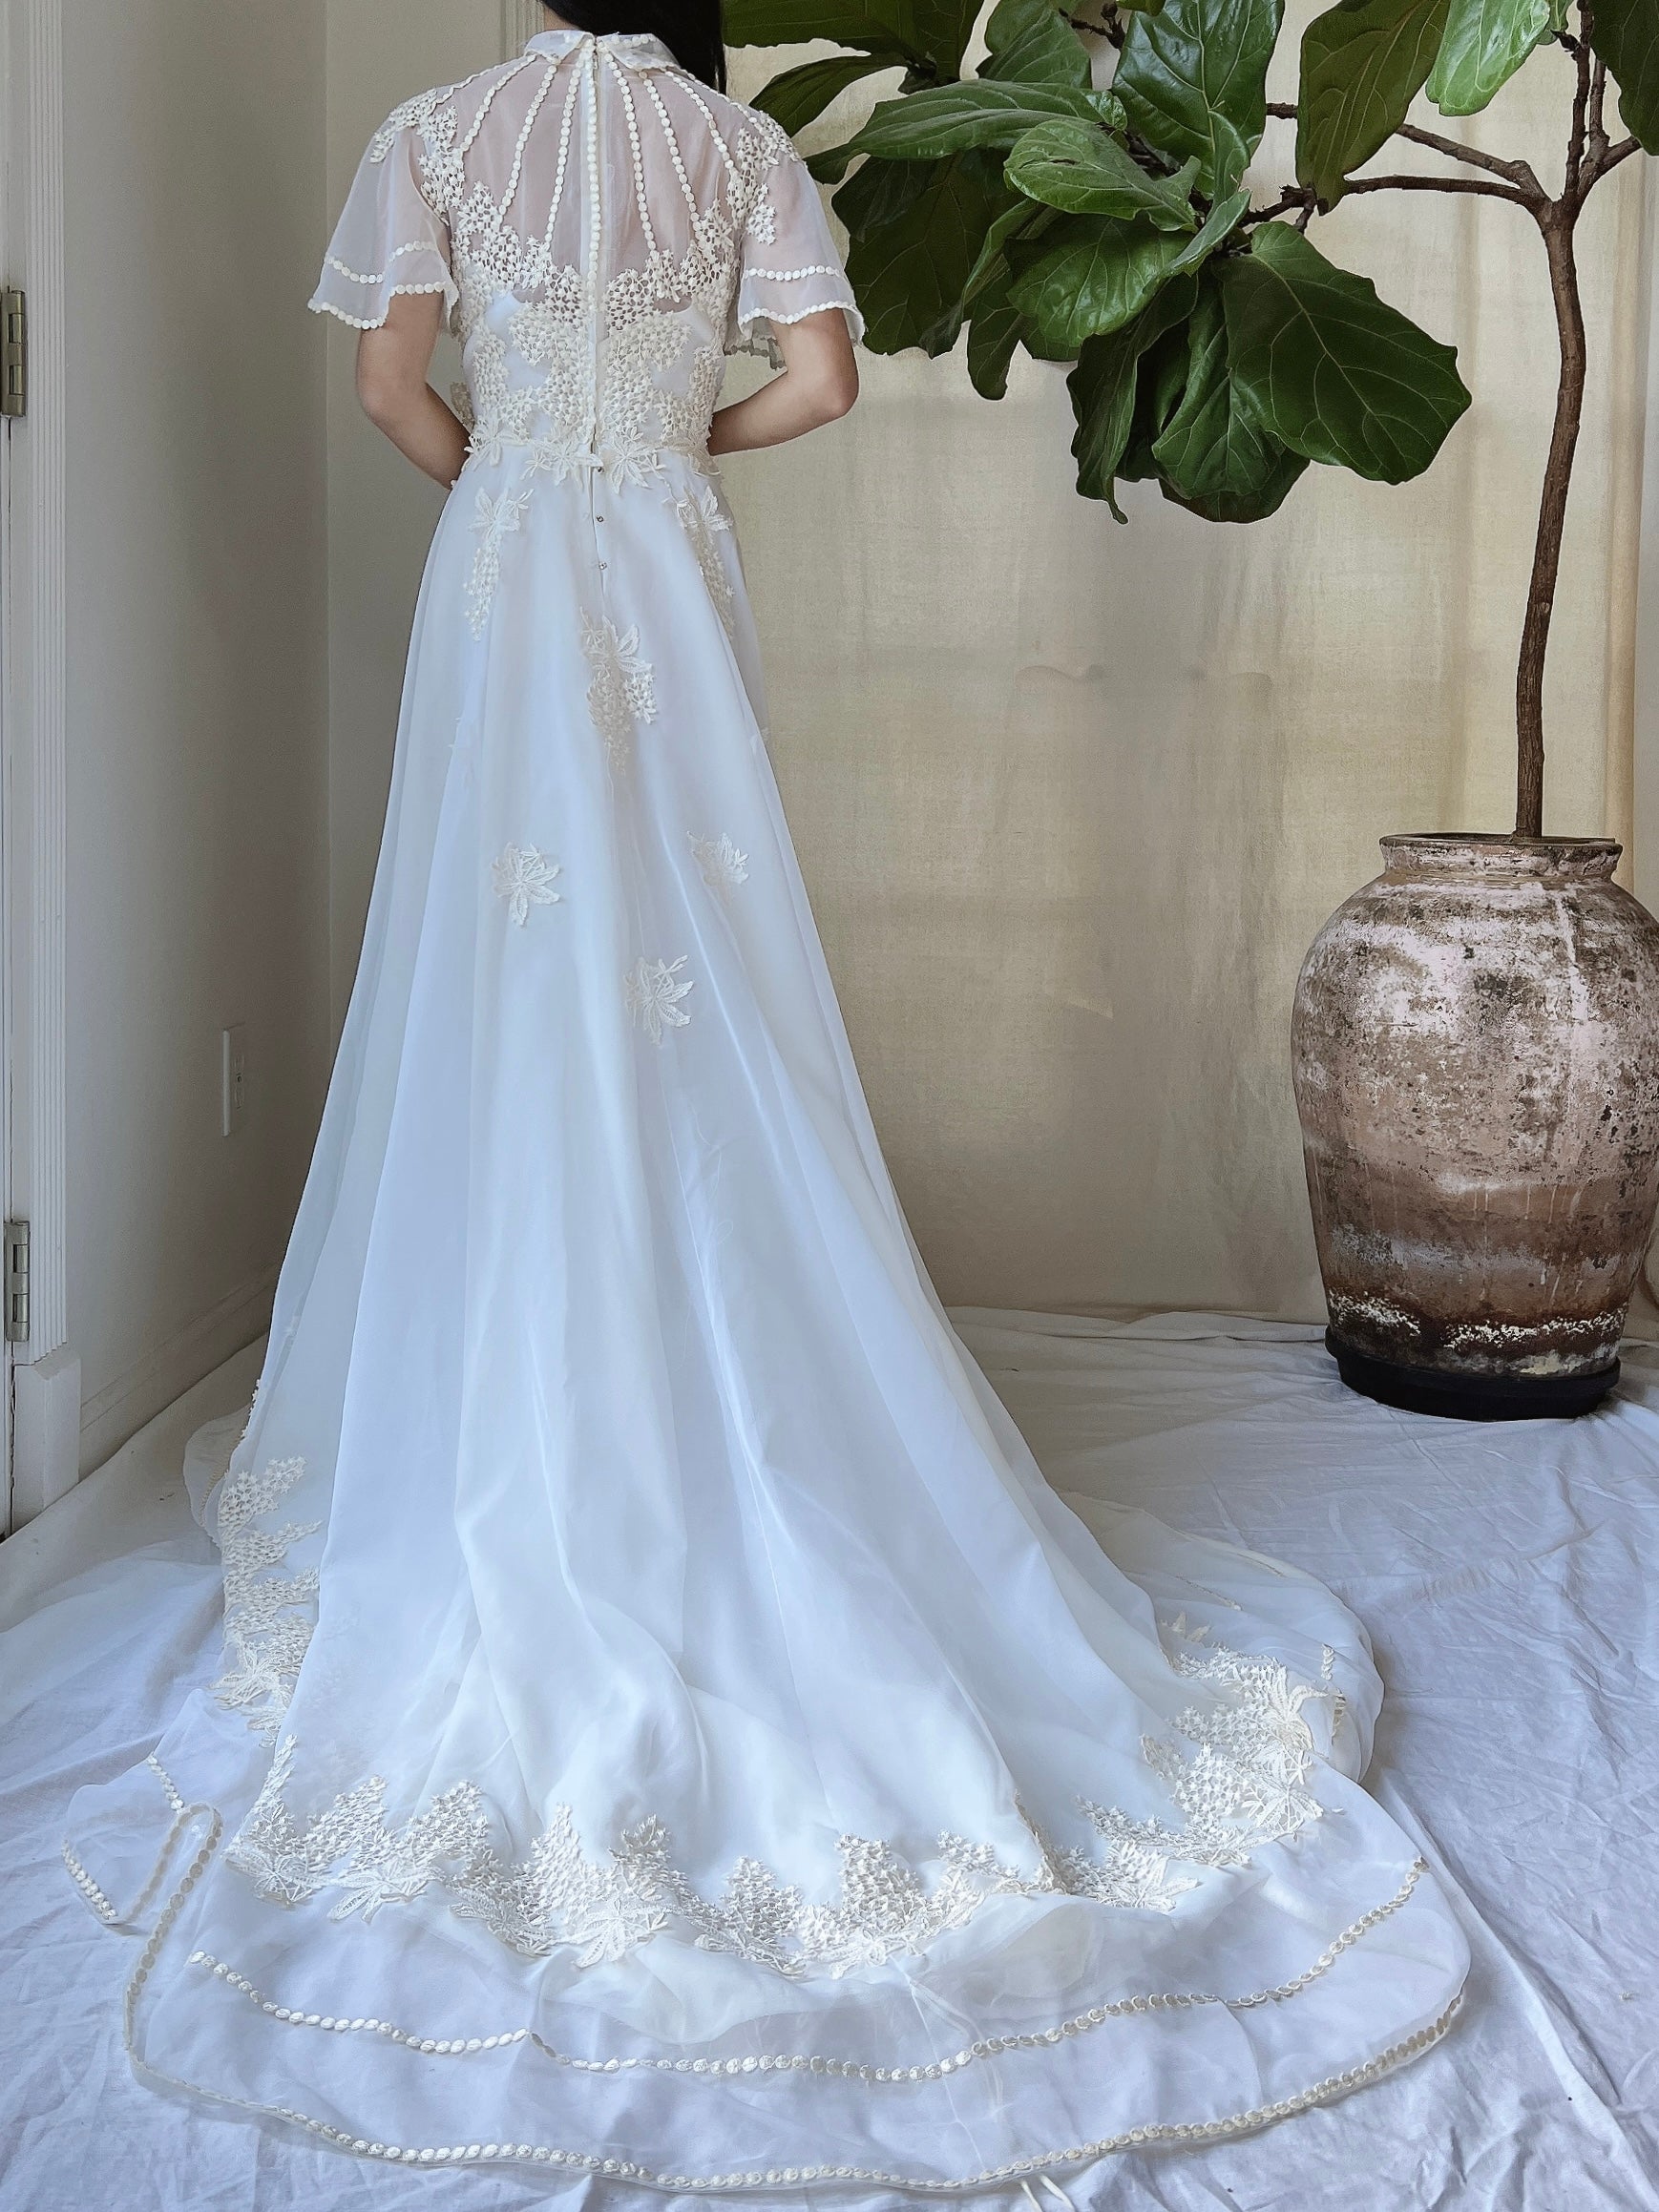 Vintage Flutter Sleeve Wedding Dress - M